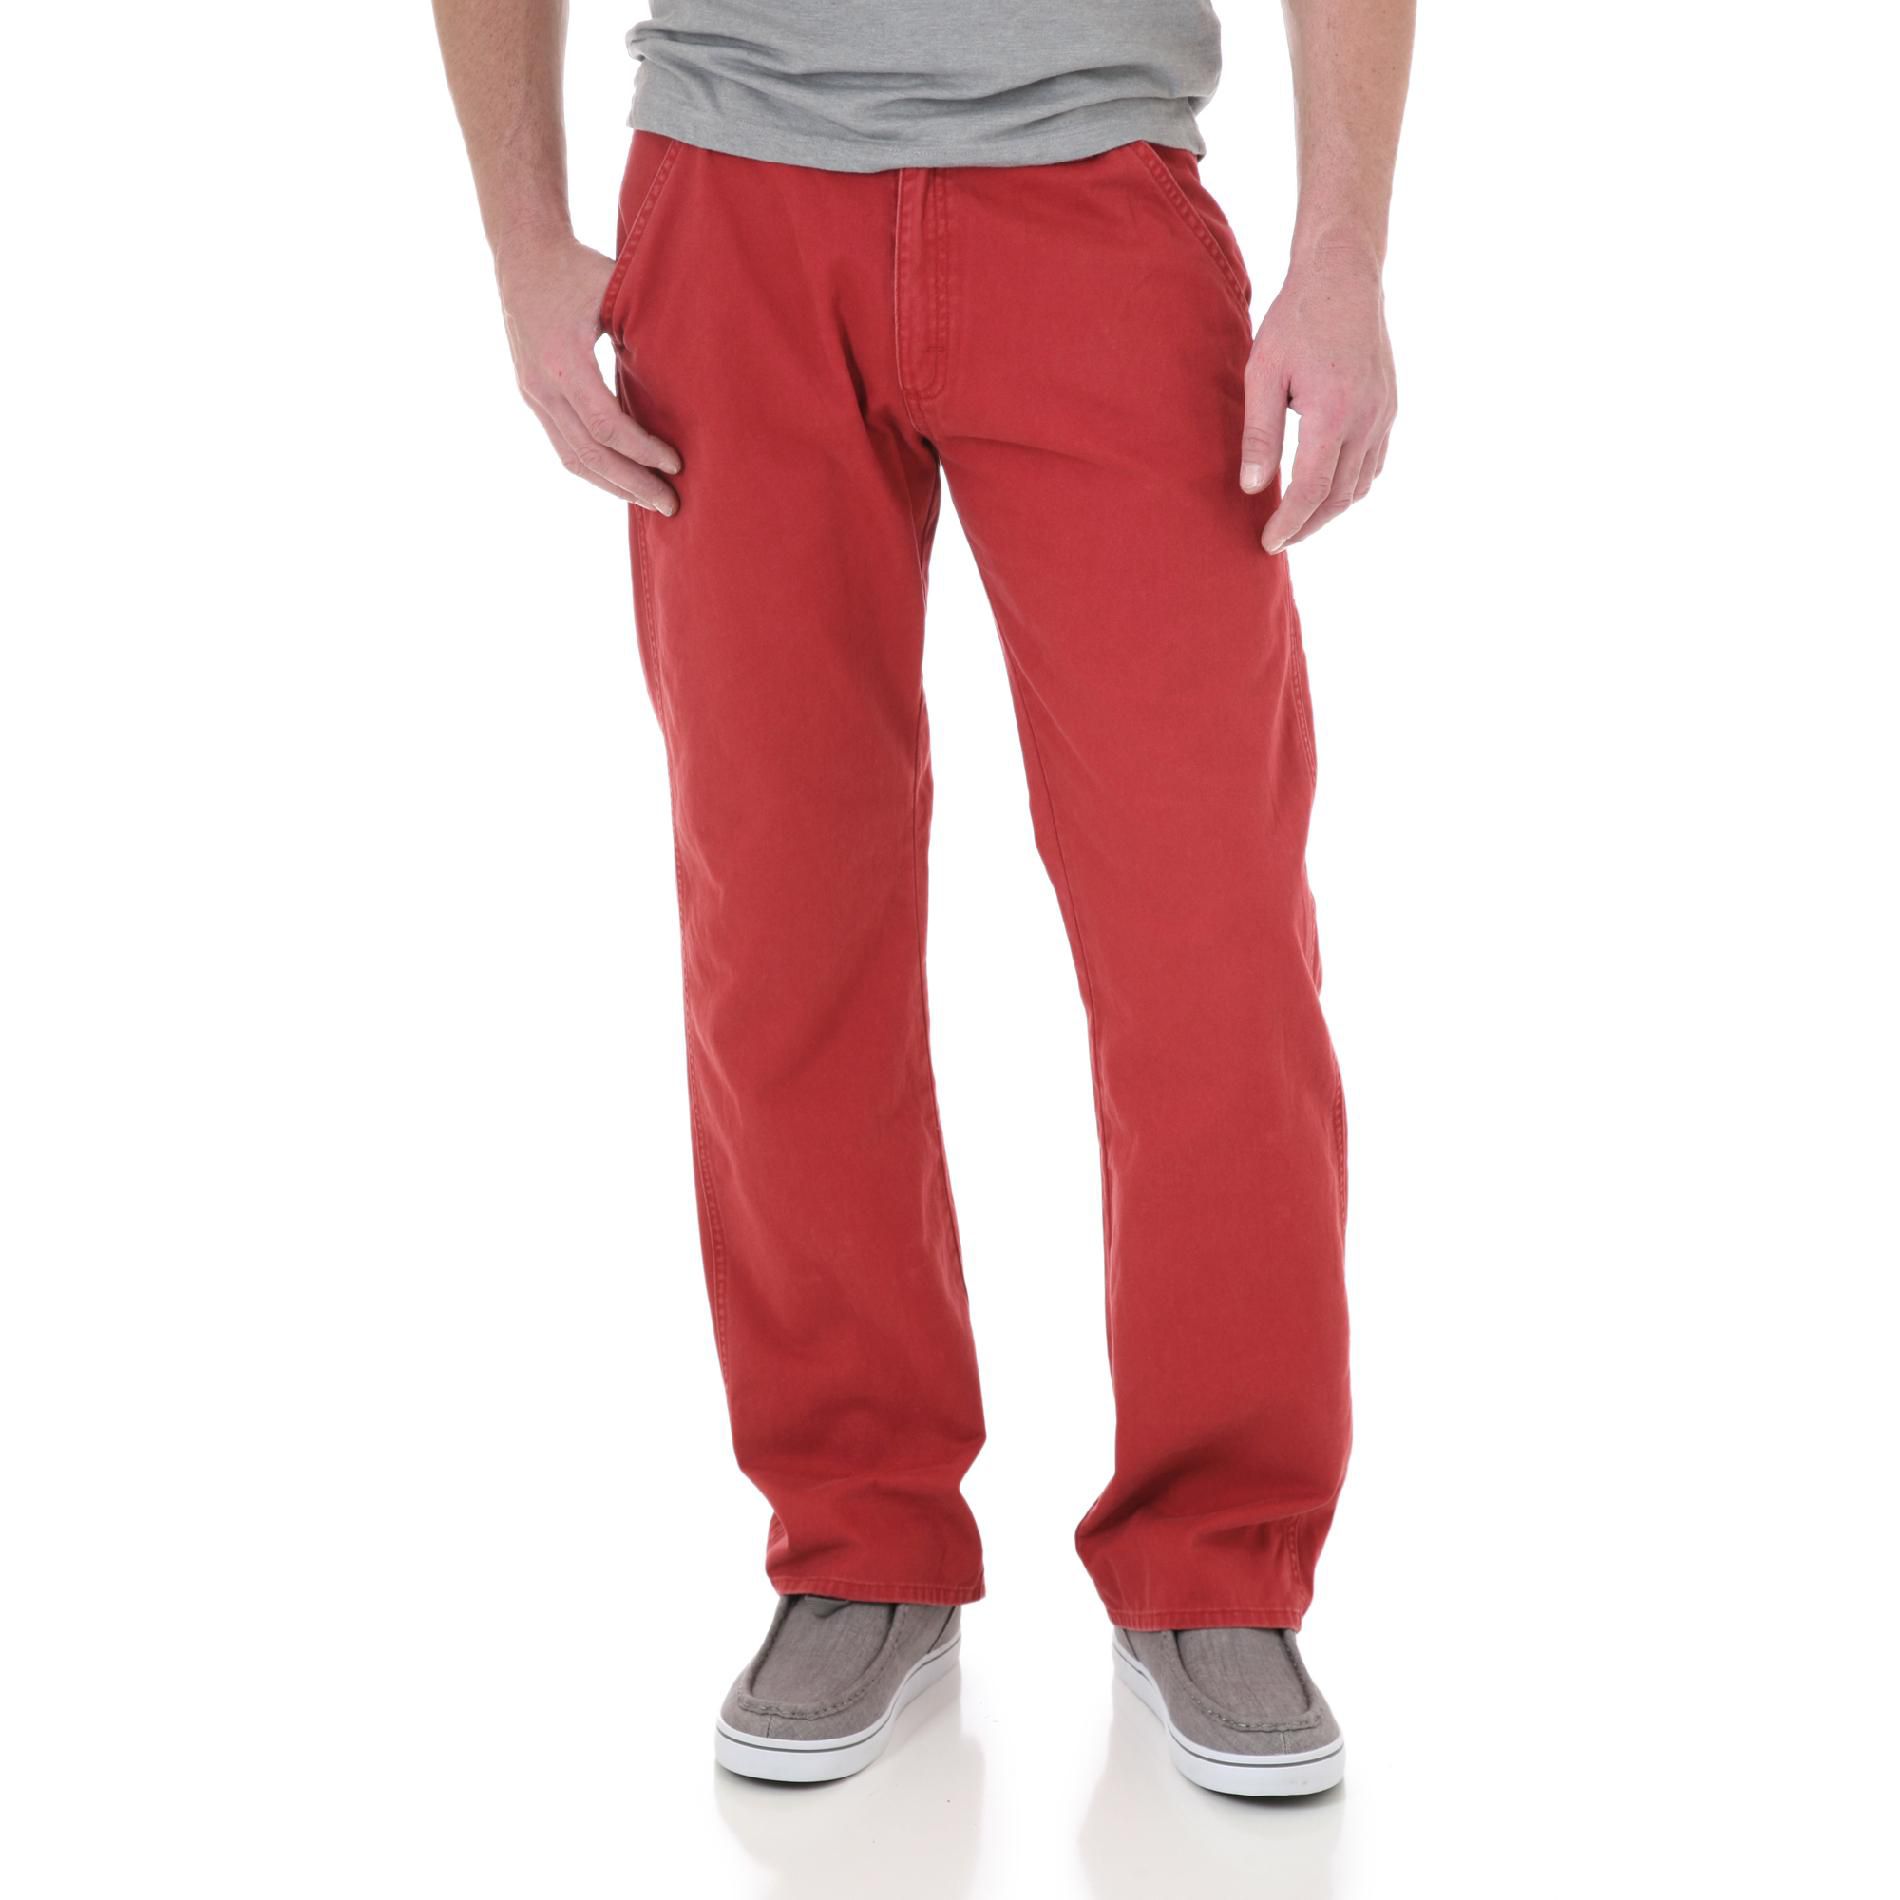 Wrangler Men's Burnt Red Pants